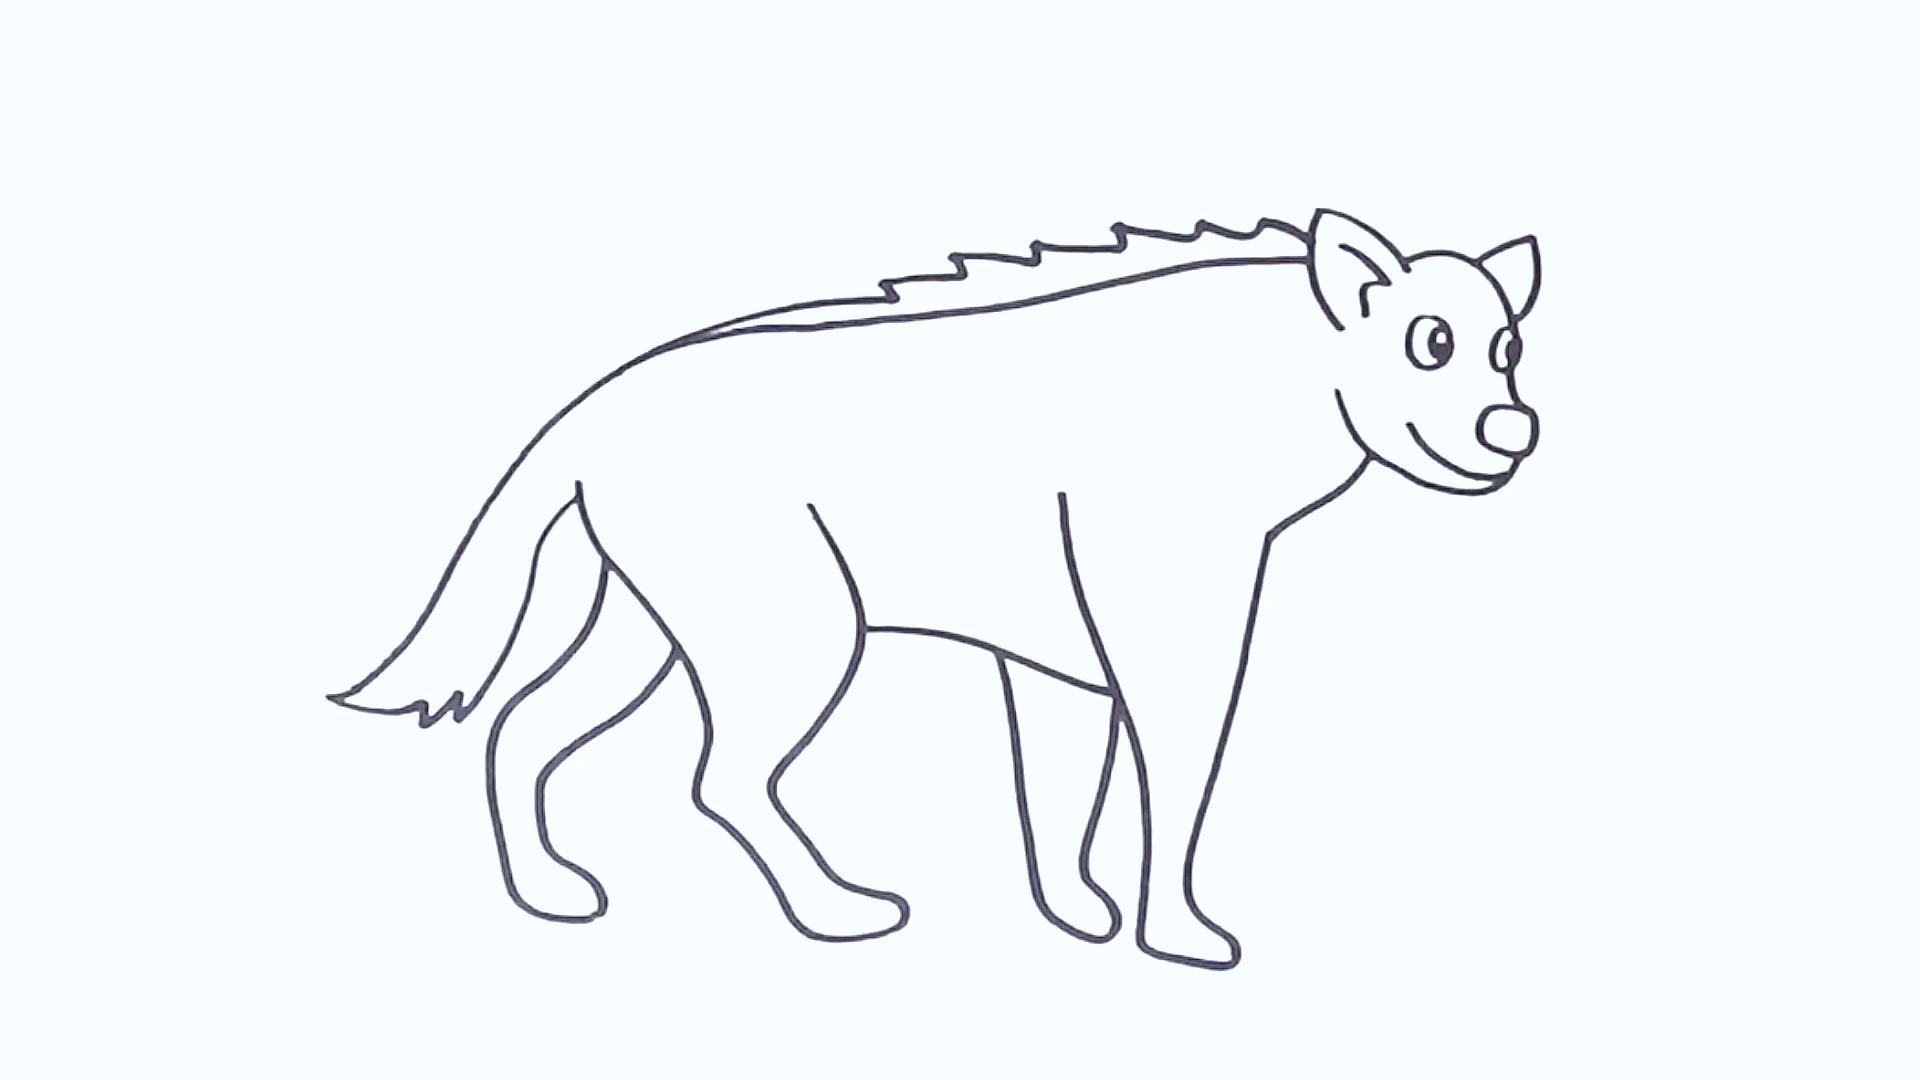 今天我们来画一只鬣狗!